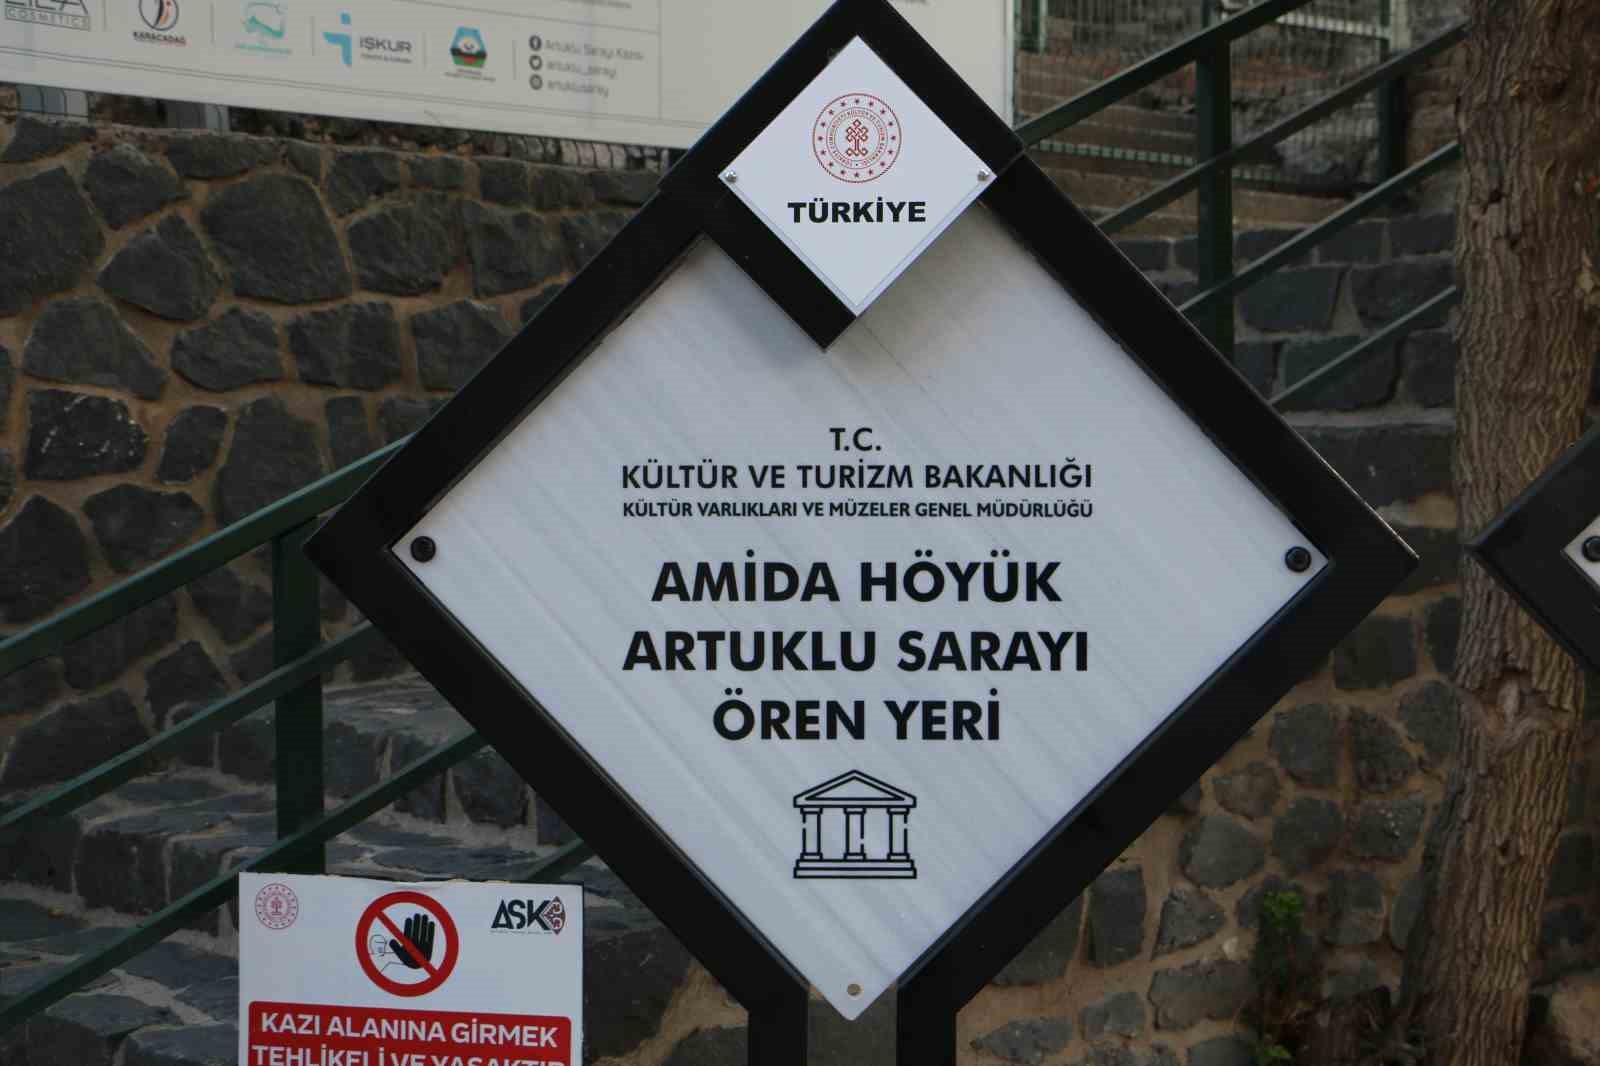 Diyarbakır Sur, ‘Dünyanın en eski şehirleri’ listesinde yanlış sırada yer aldı
